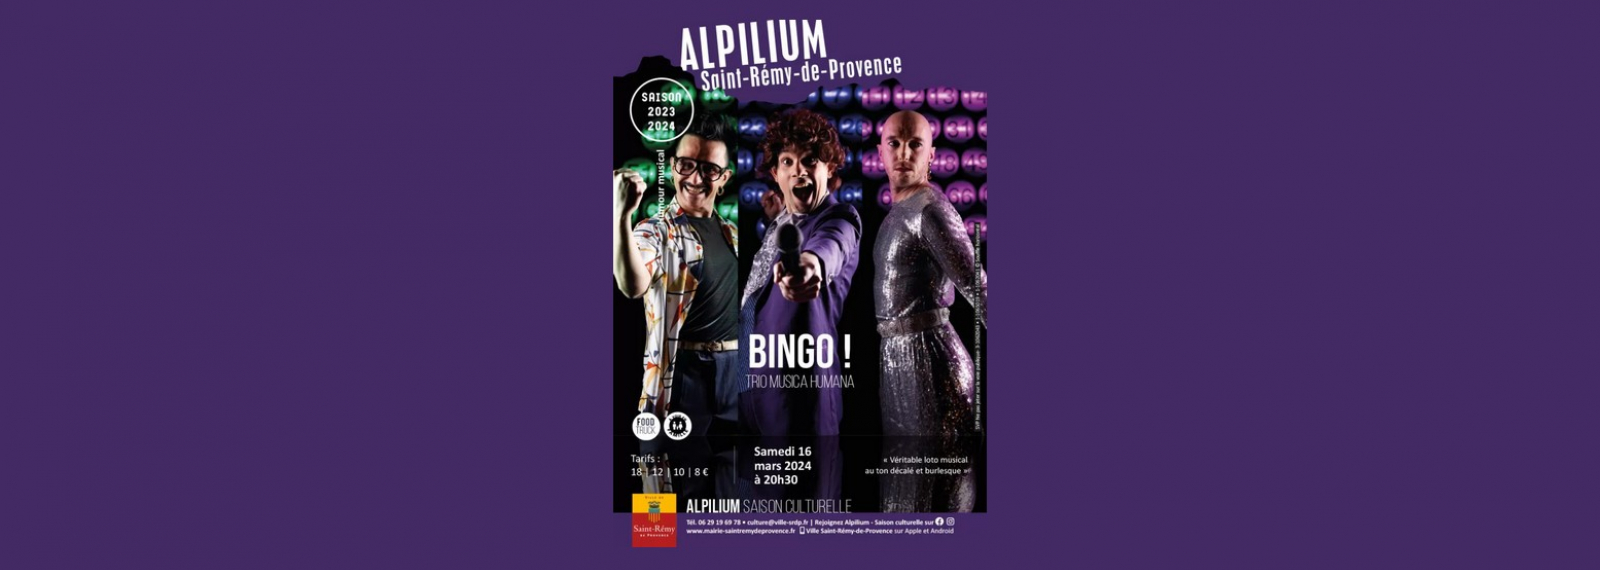 Alpilium : Bingo